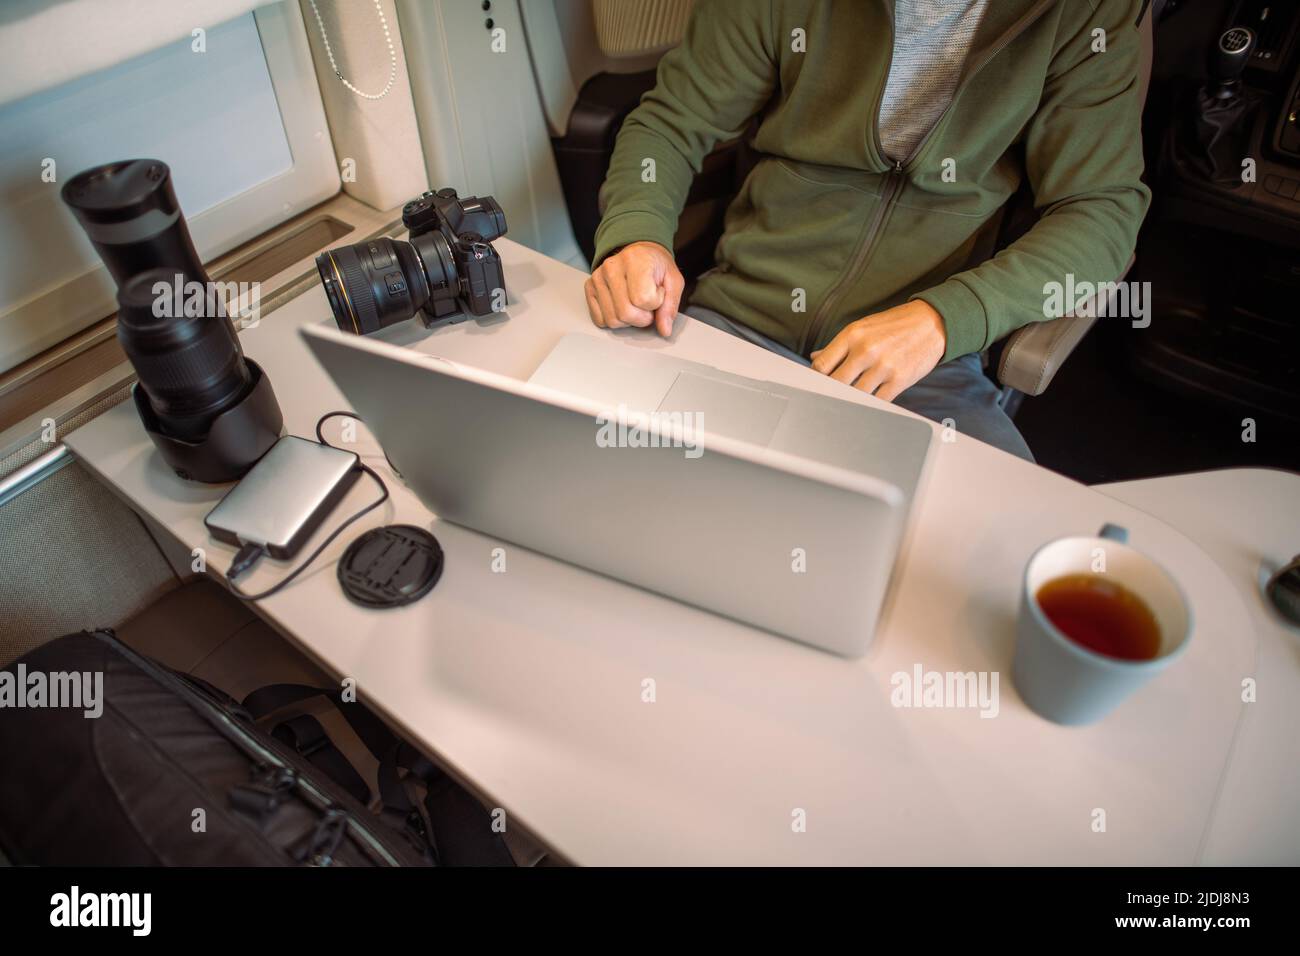 Fotografo di viaggio trasferire le sue ultime foto dalla sua fotocamera al computer portatile seduto nel suo pulmino Camper durante il pernottamento. Foto Stock